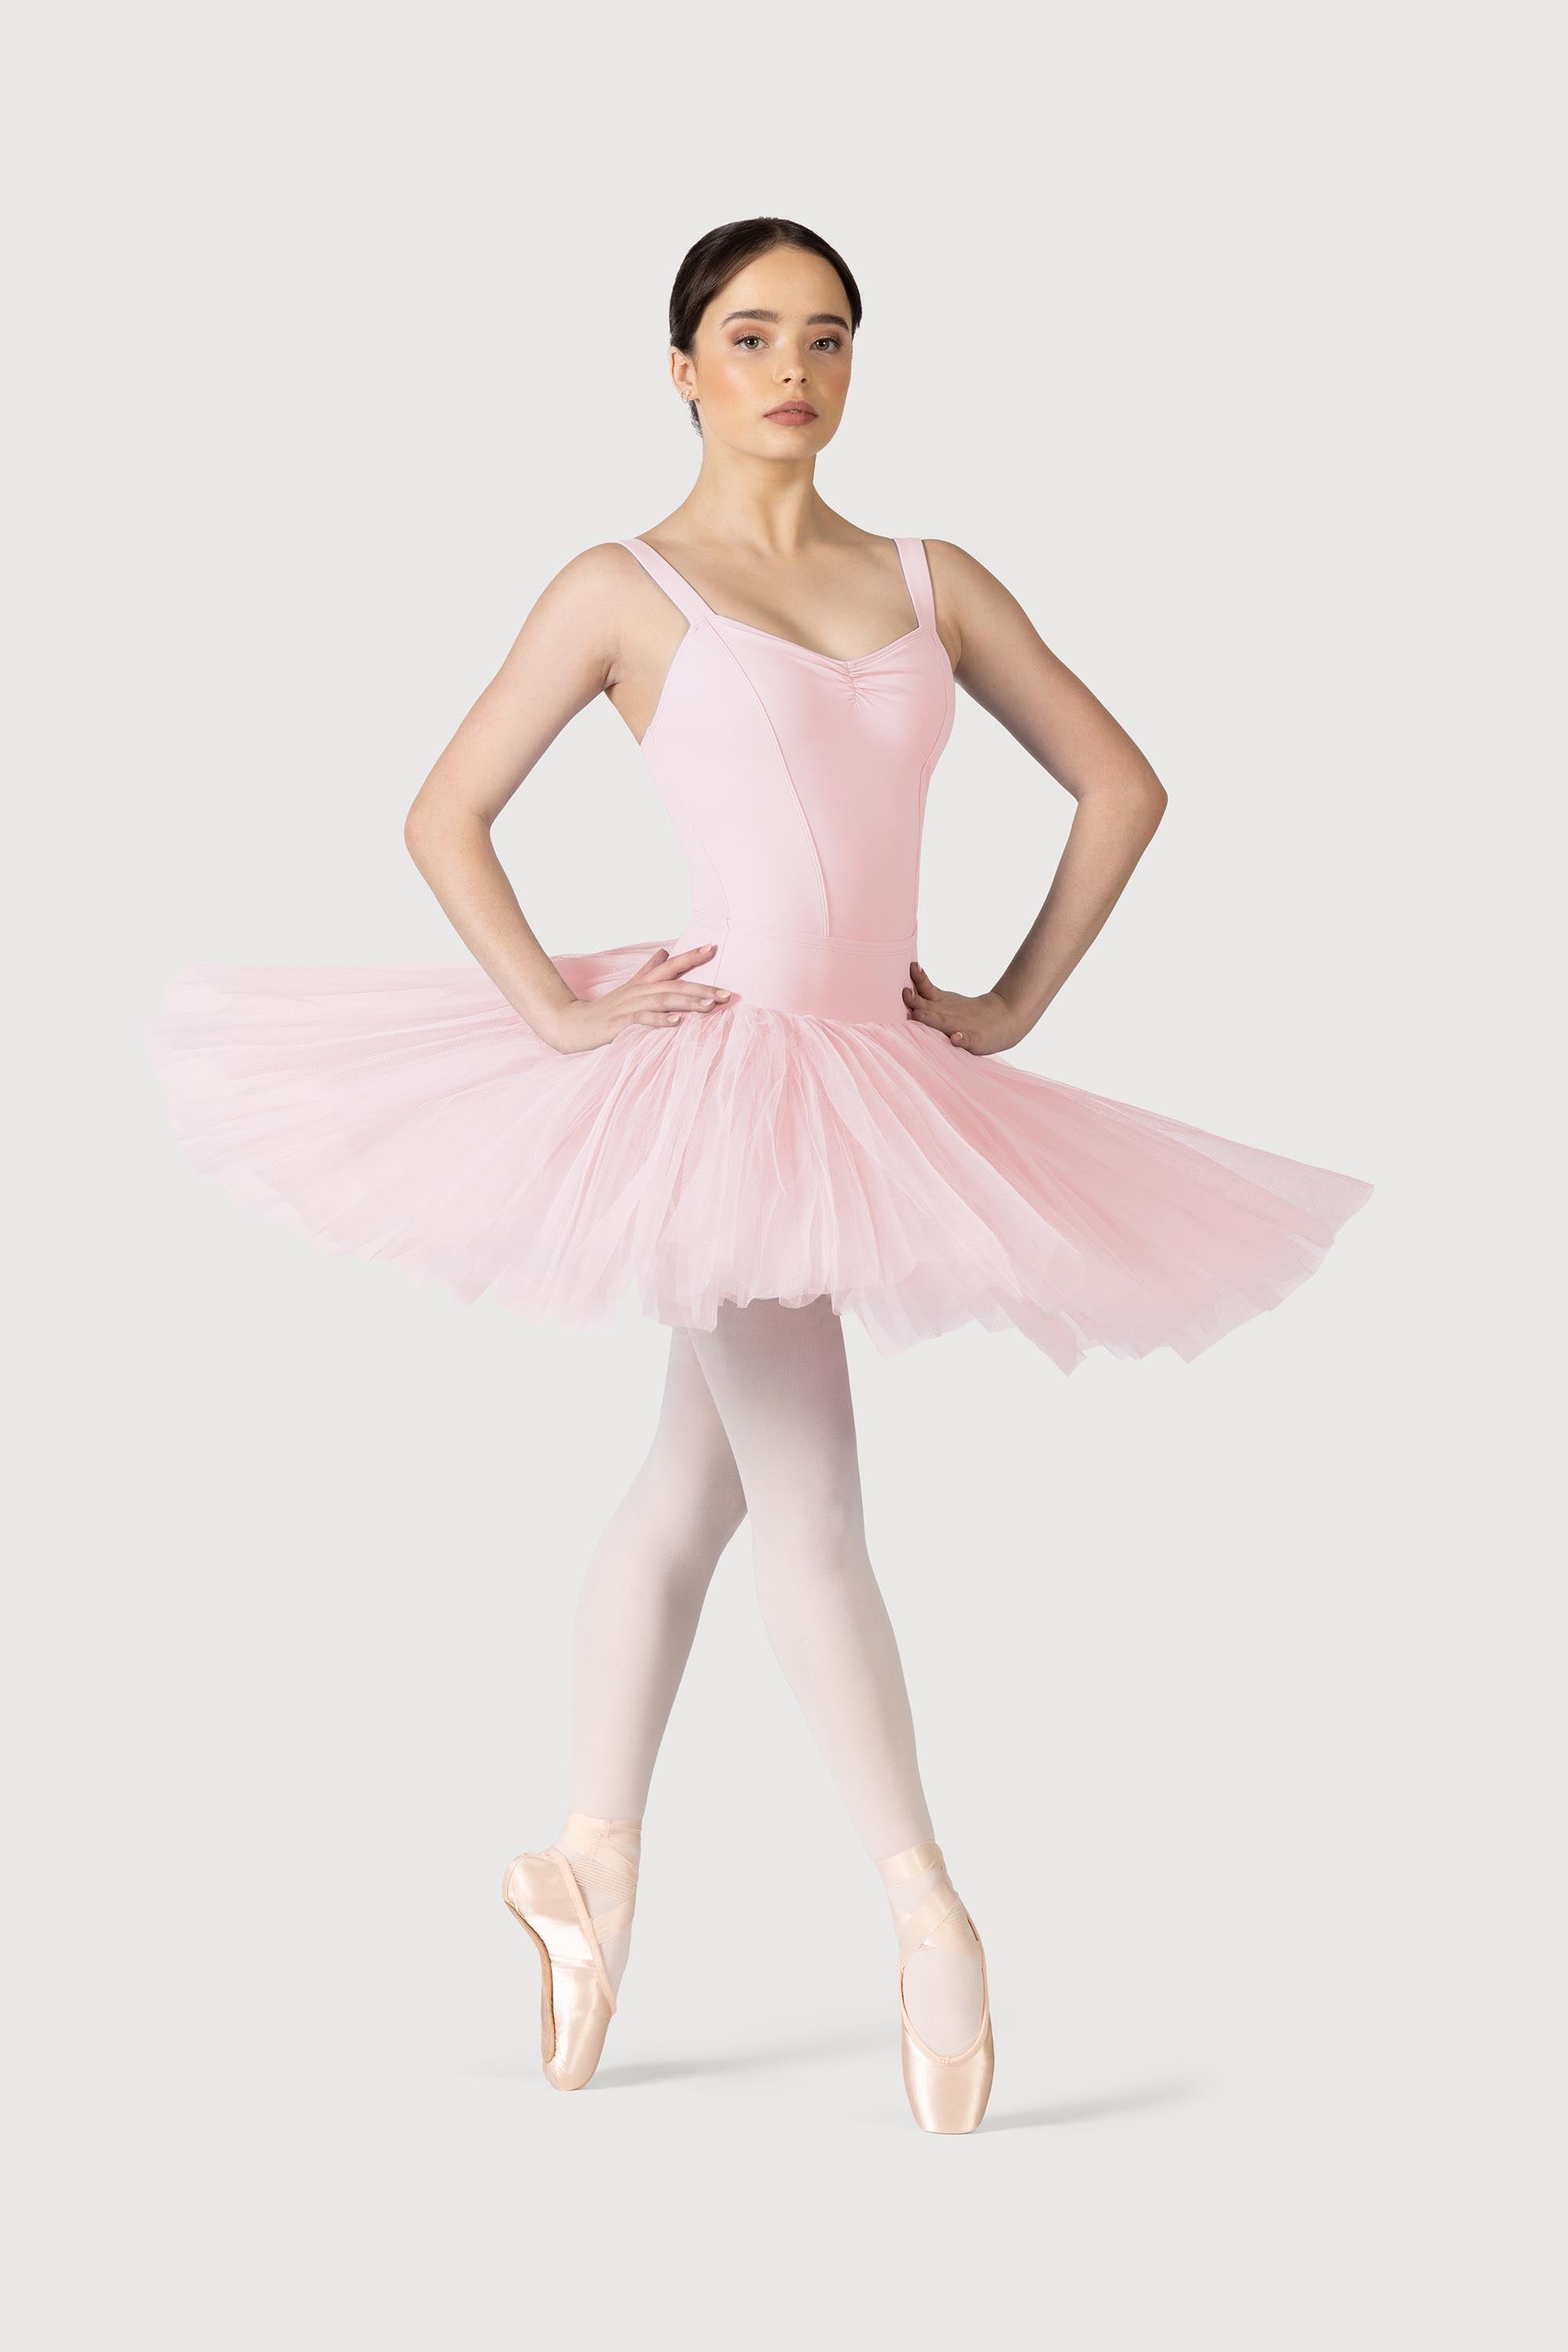 Easel Allover Mesh Ballerina Tulle Princess Maxi Skirt in Black New S-L  EB40814 | eBay